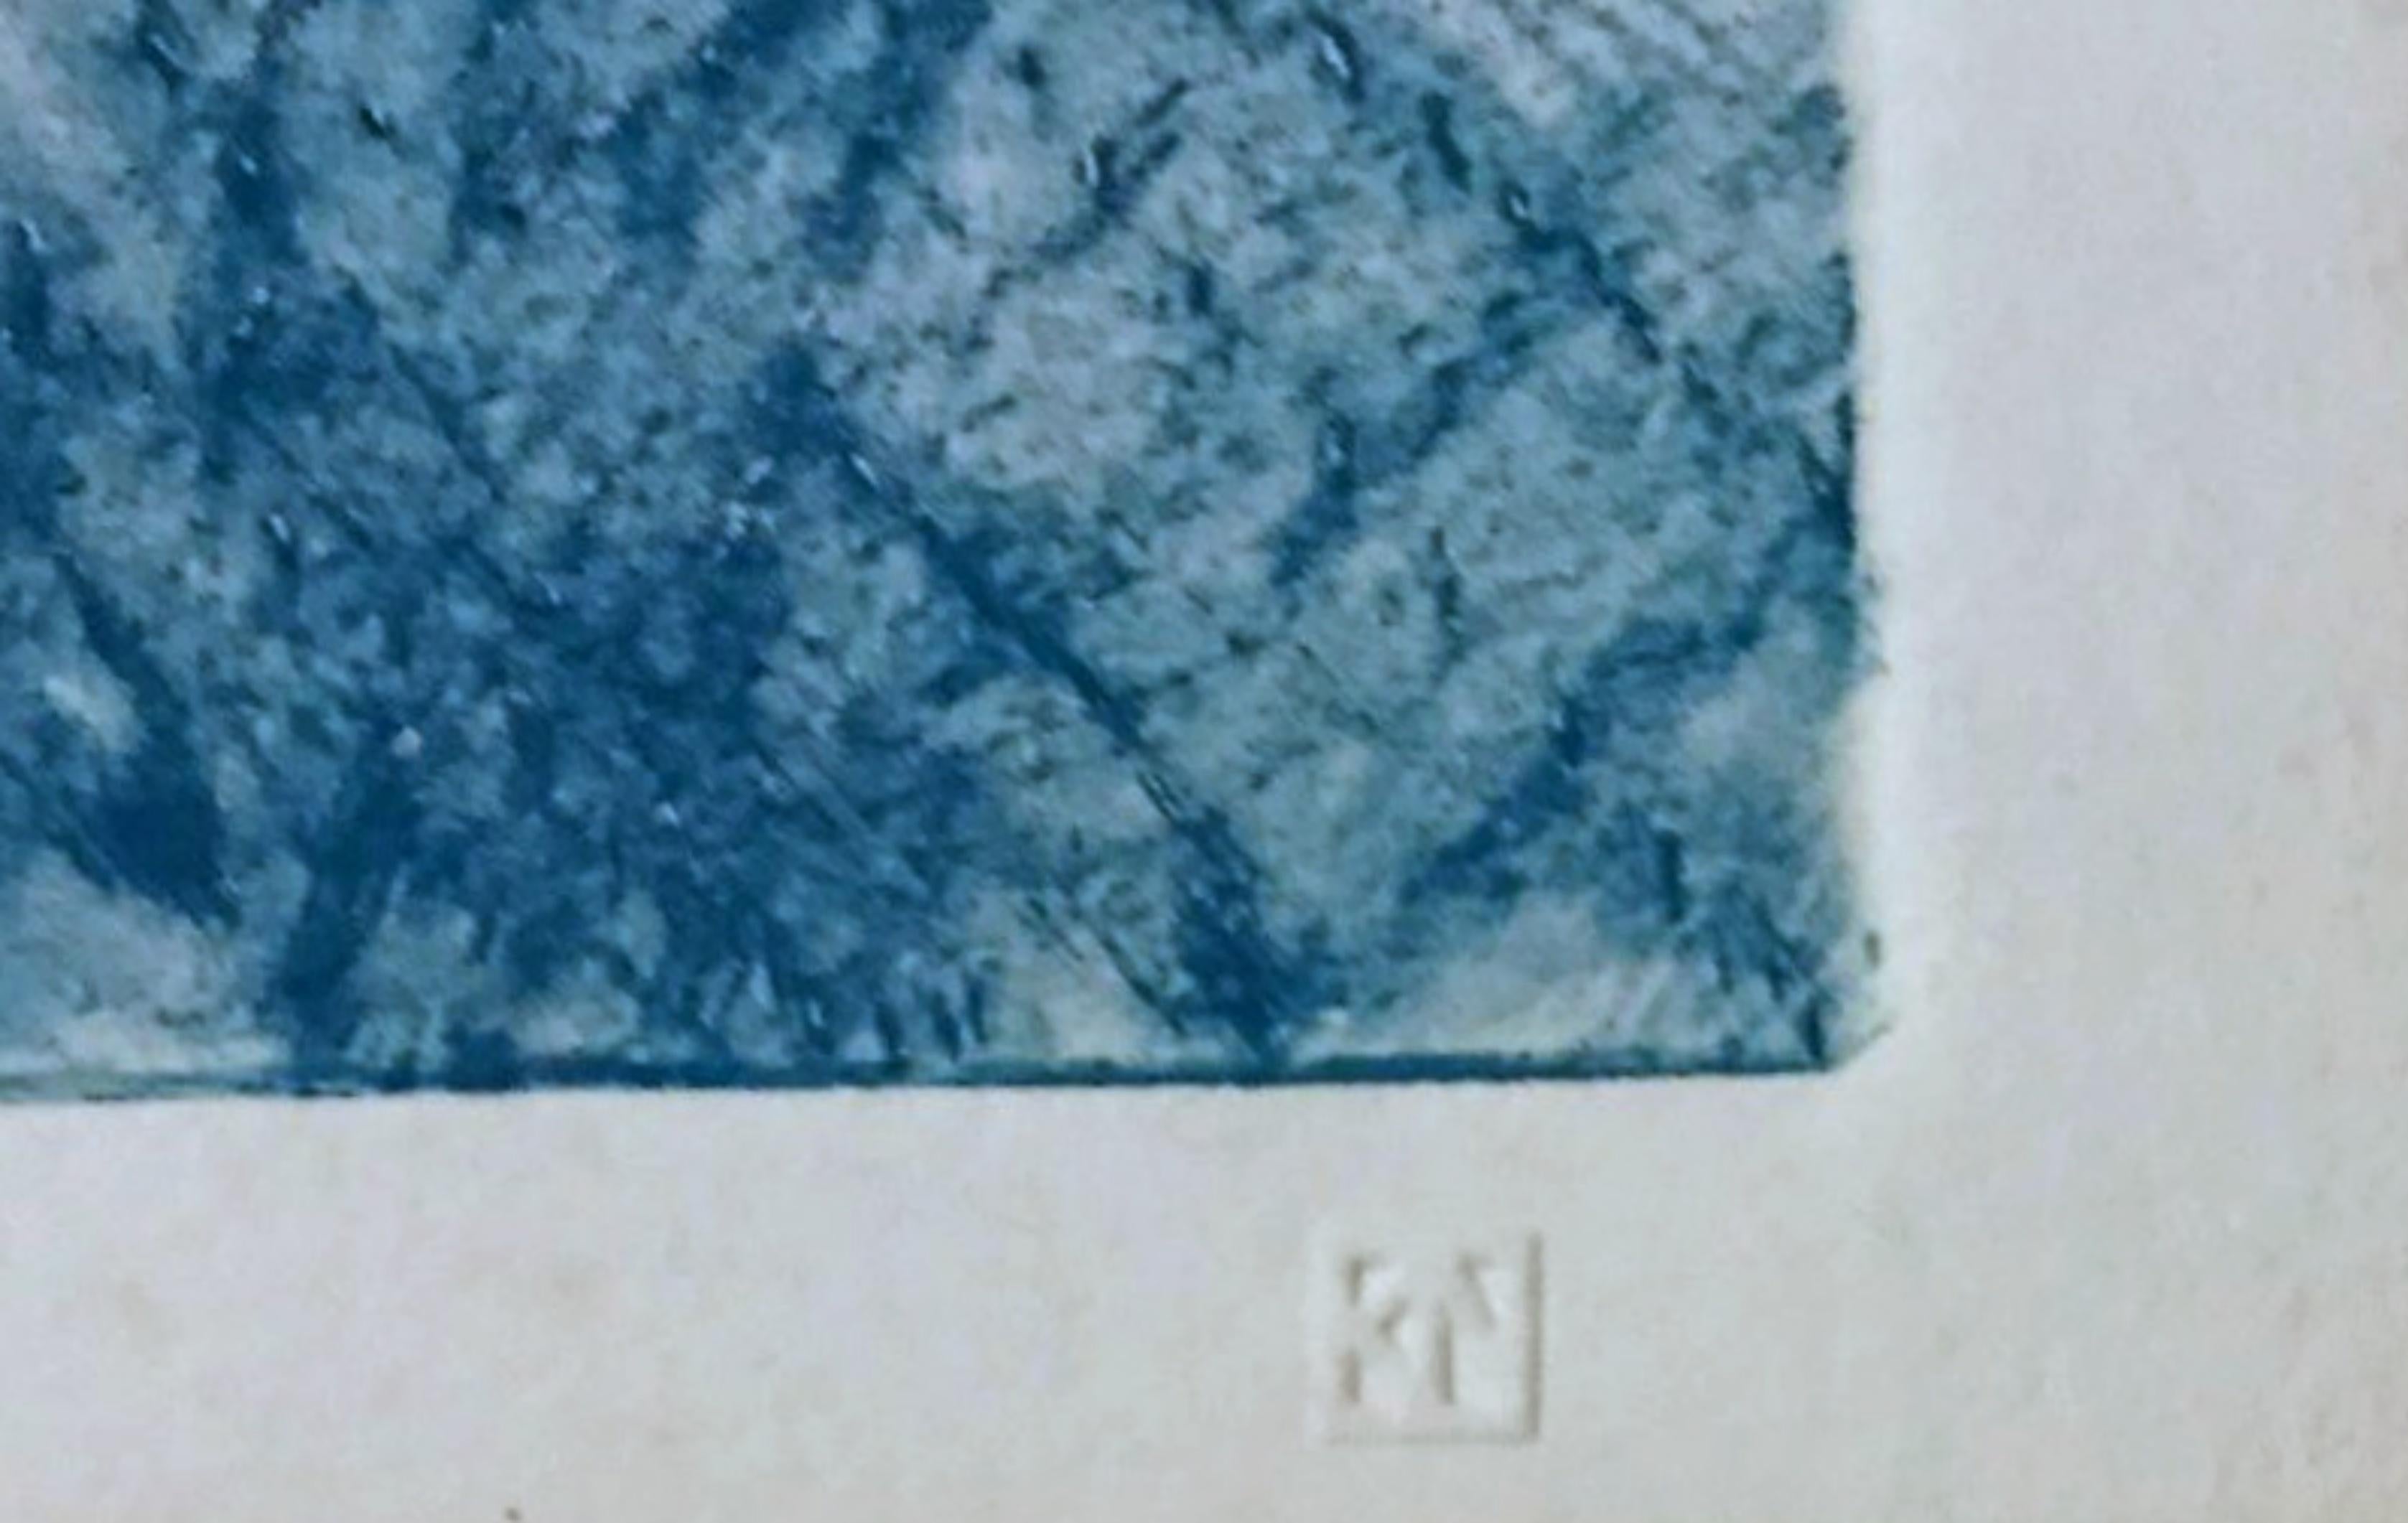 Kenneth Noland
Unbetitelt, 1987
Monotypie mit Handmalerei auf Velinpapier
Handsigniert und datiert mit dem Copyright des Künstlers in Bleistift auf der Rückseite; außerdem mit dem Blindstempel/der Schnittmarke unten rechts